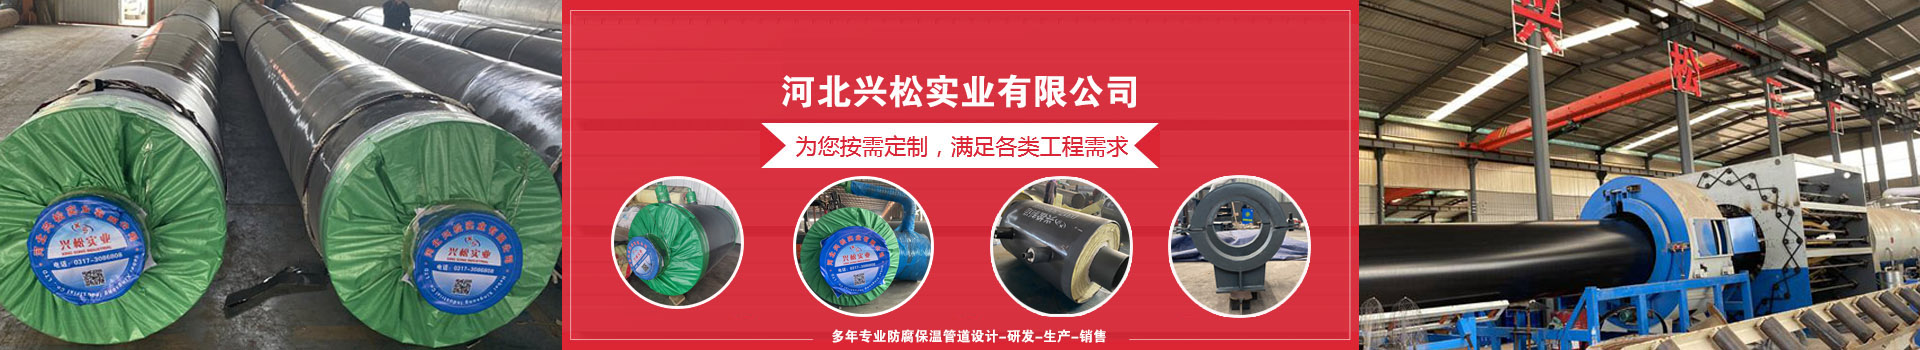 江蘇泗陽意楊產業園集中供熱管網工程